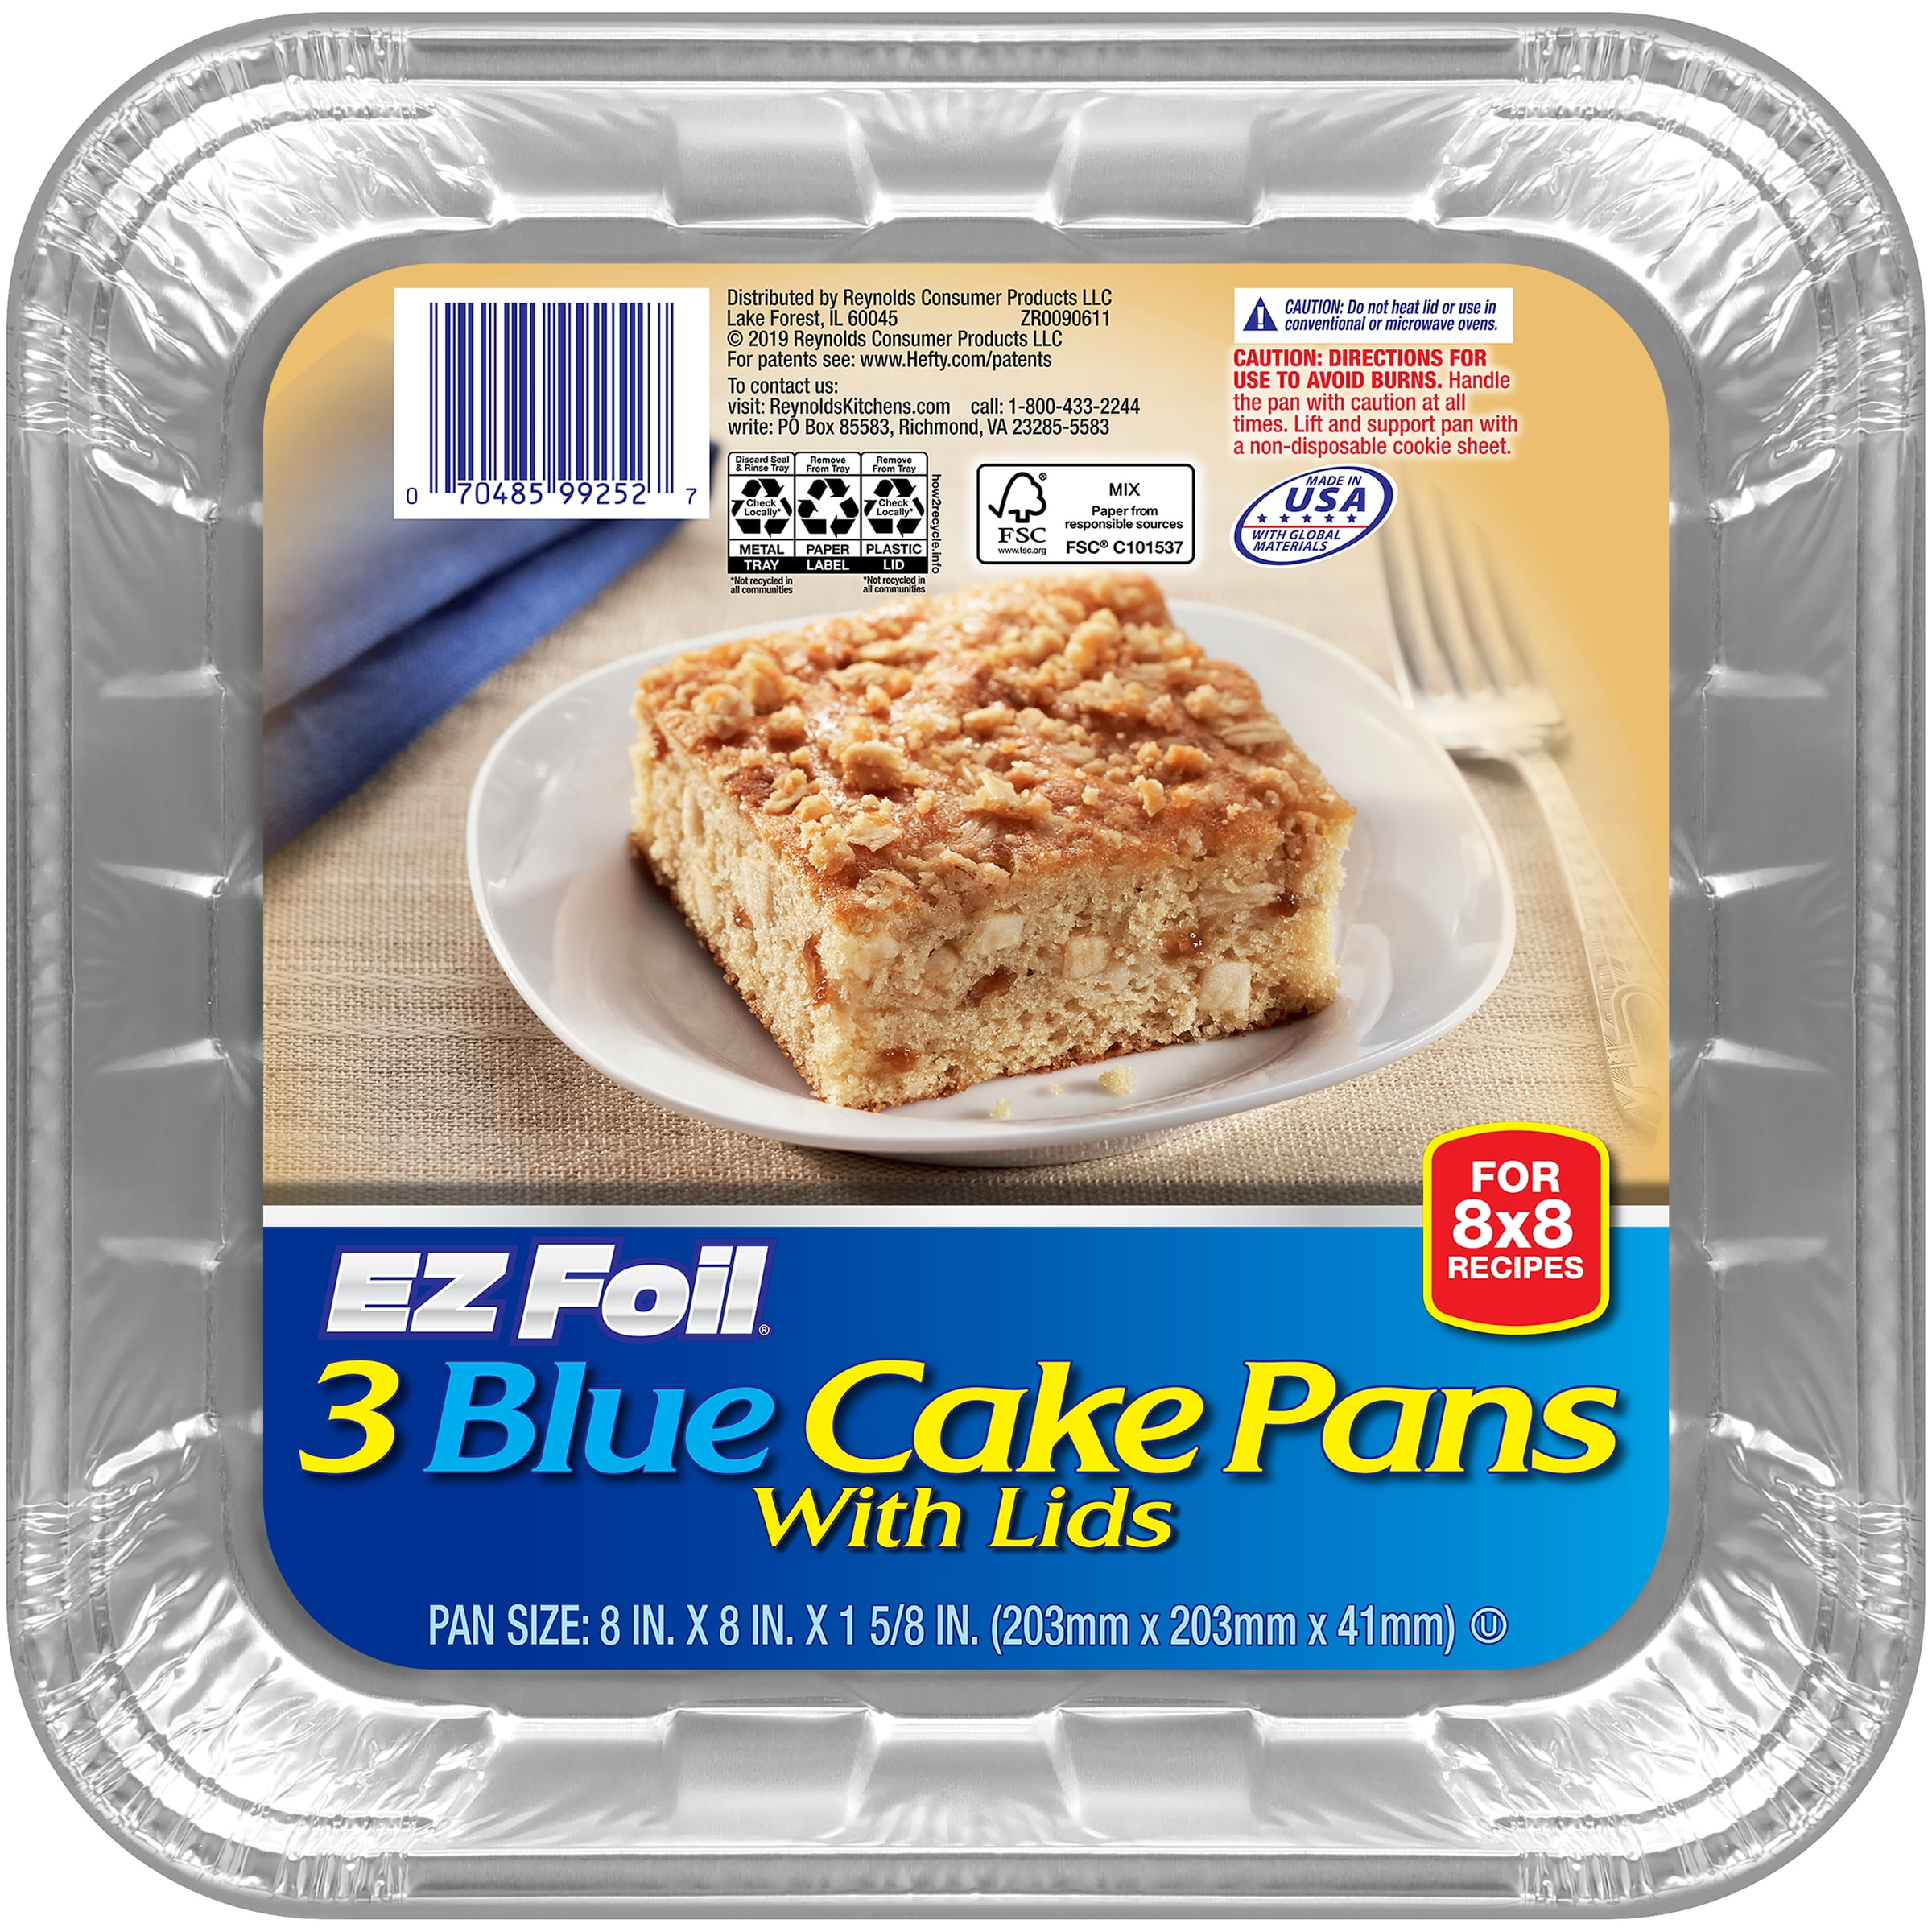 Hefty EZ Foil Blue Square Disposable Baking Pans with Lids, 8x8 Inch, 3 Count